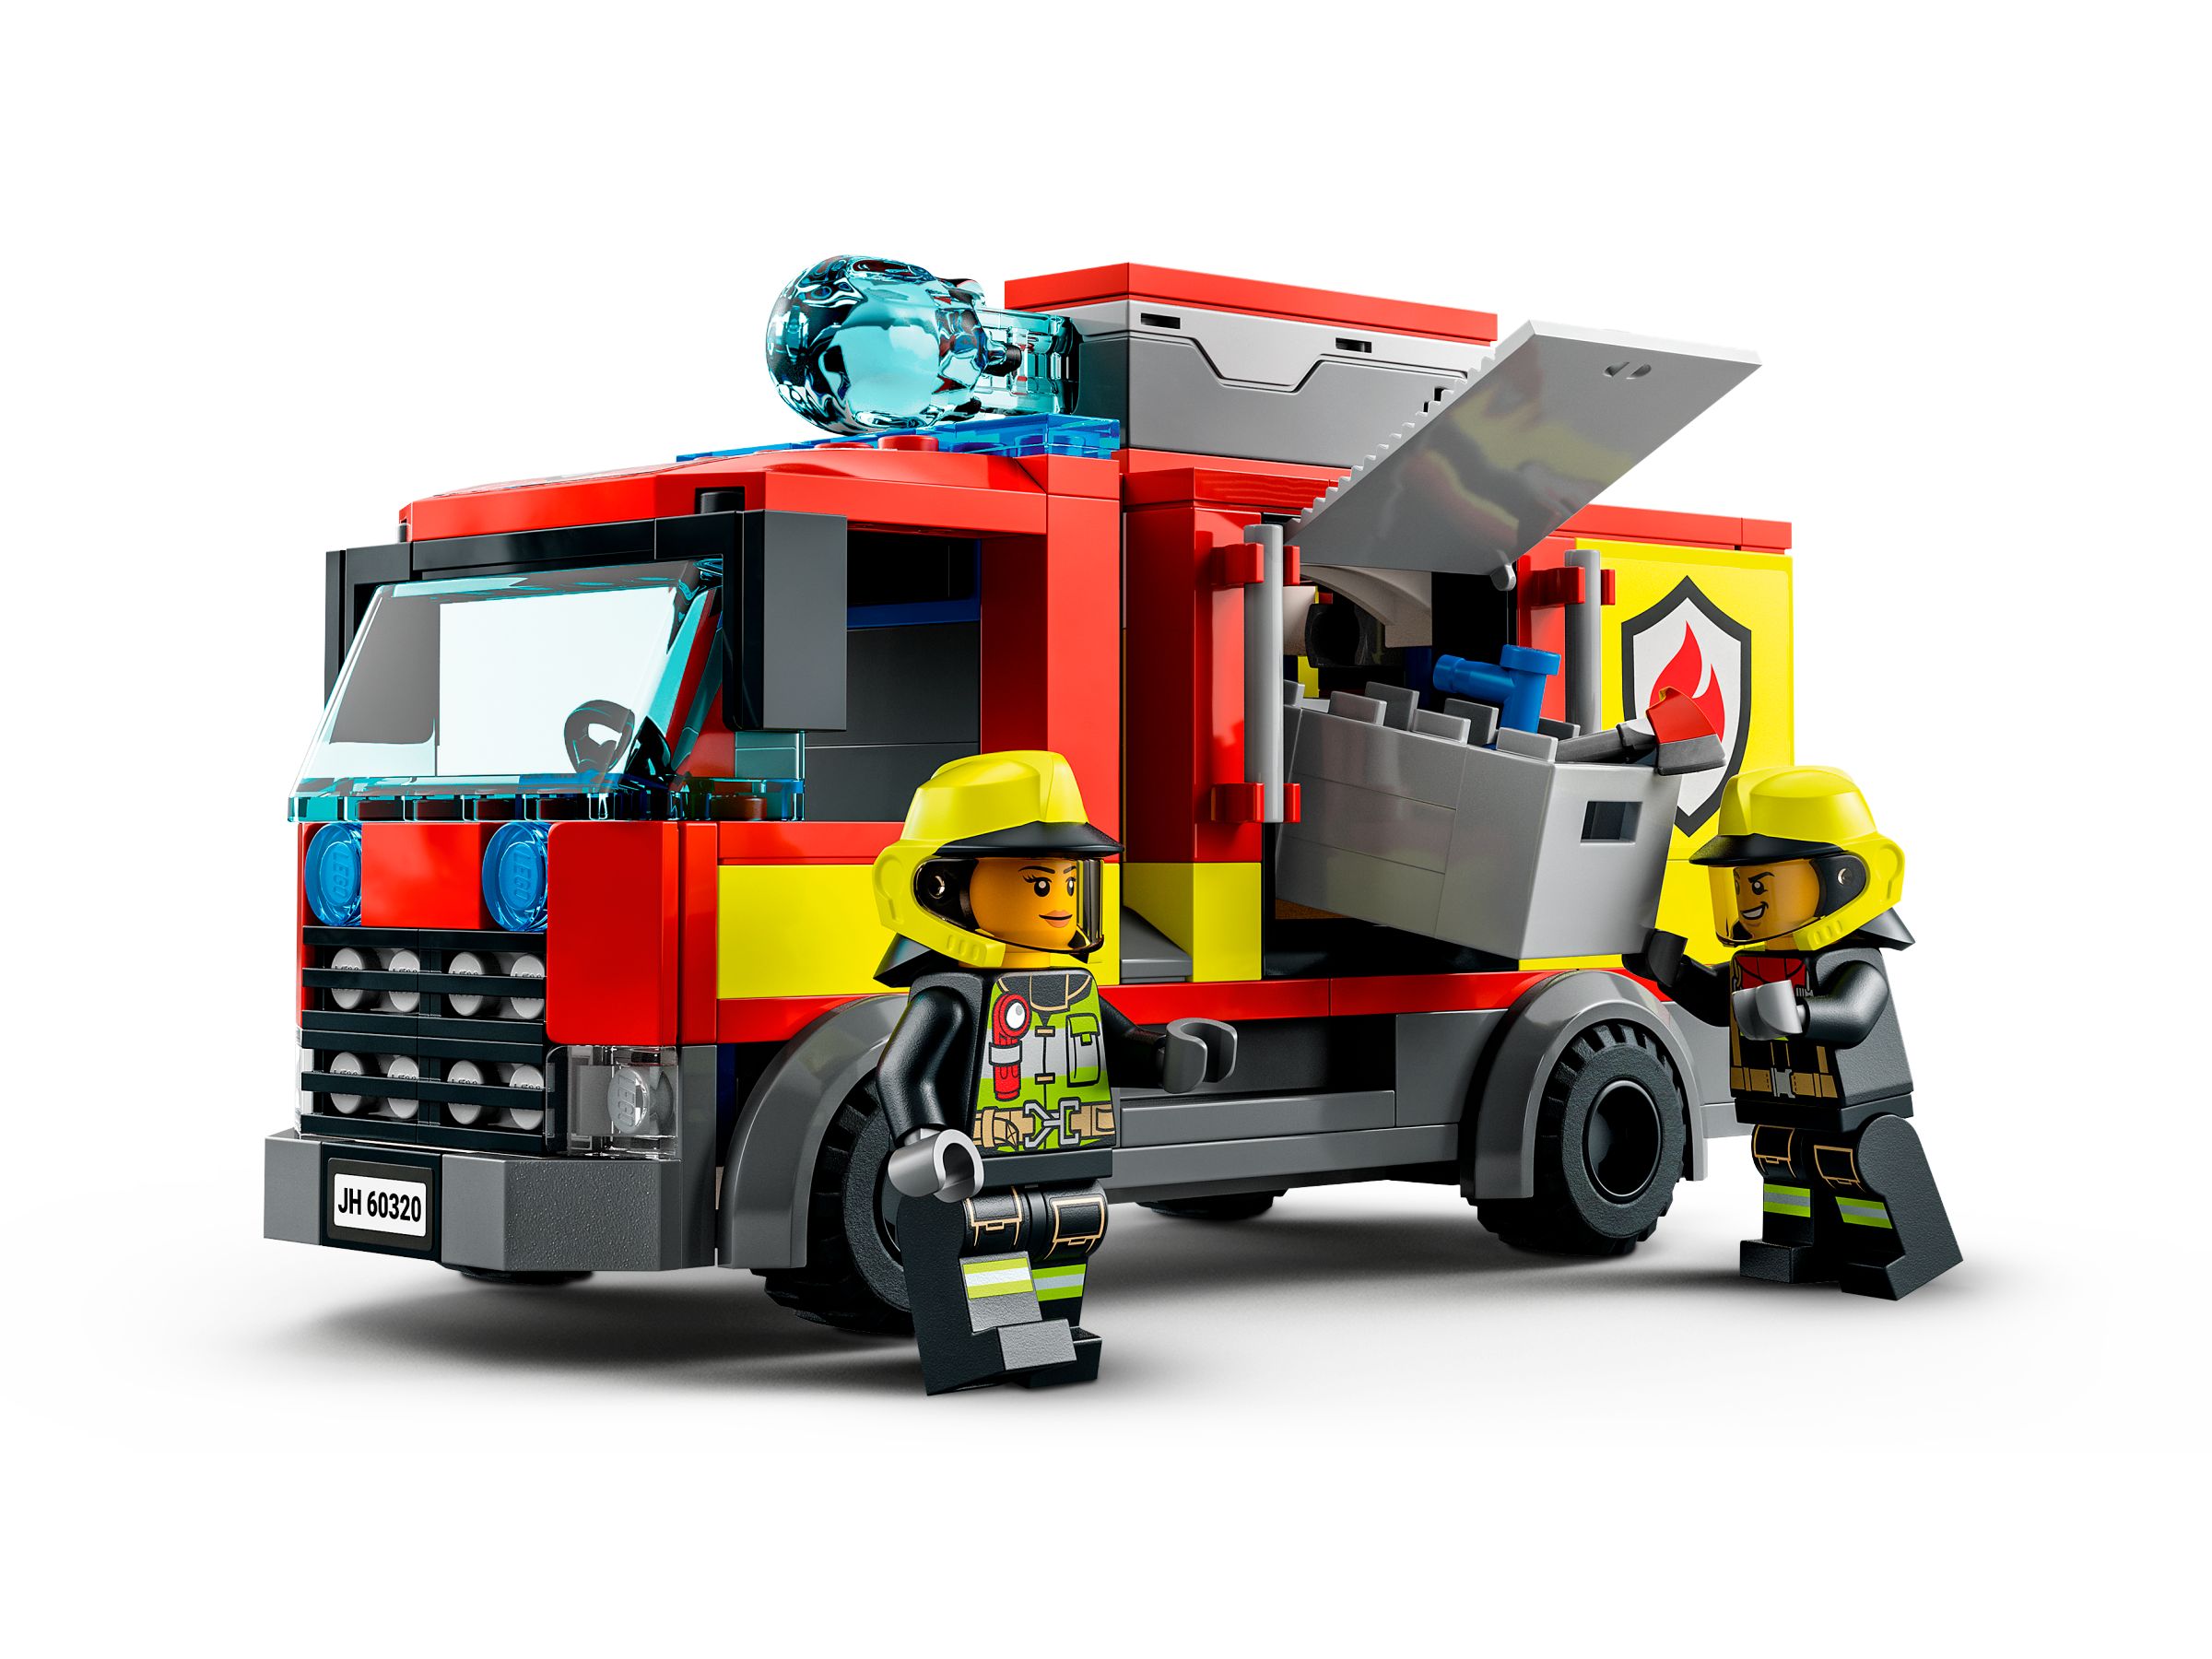 LEGO City 60320 Feuerwache LEGO_60320_alt5.jpg